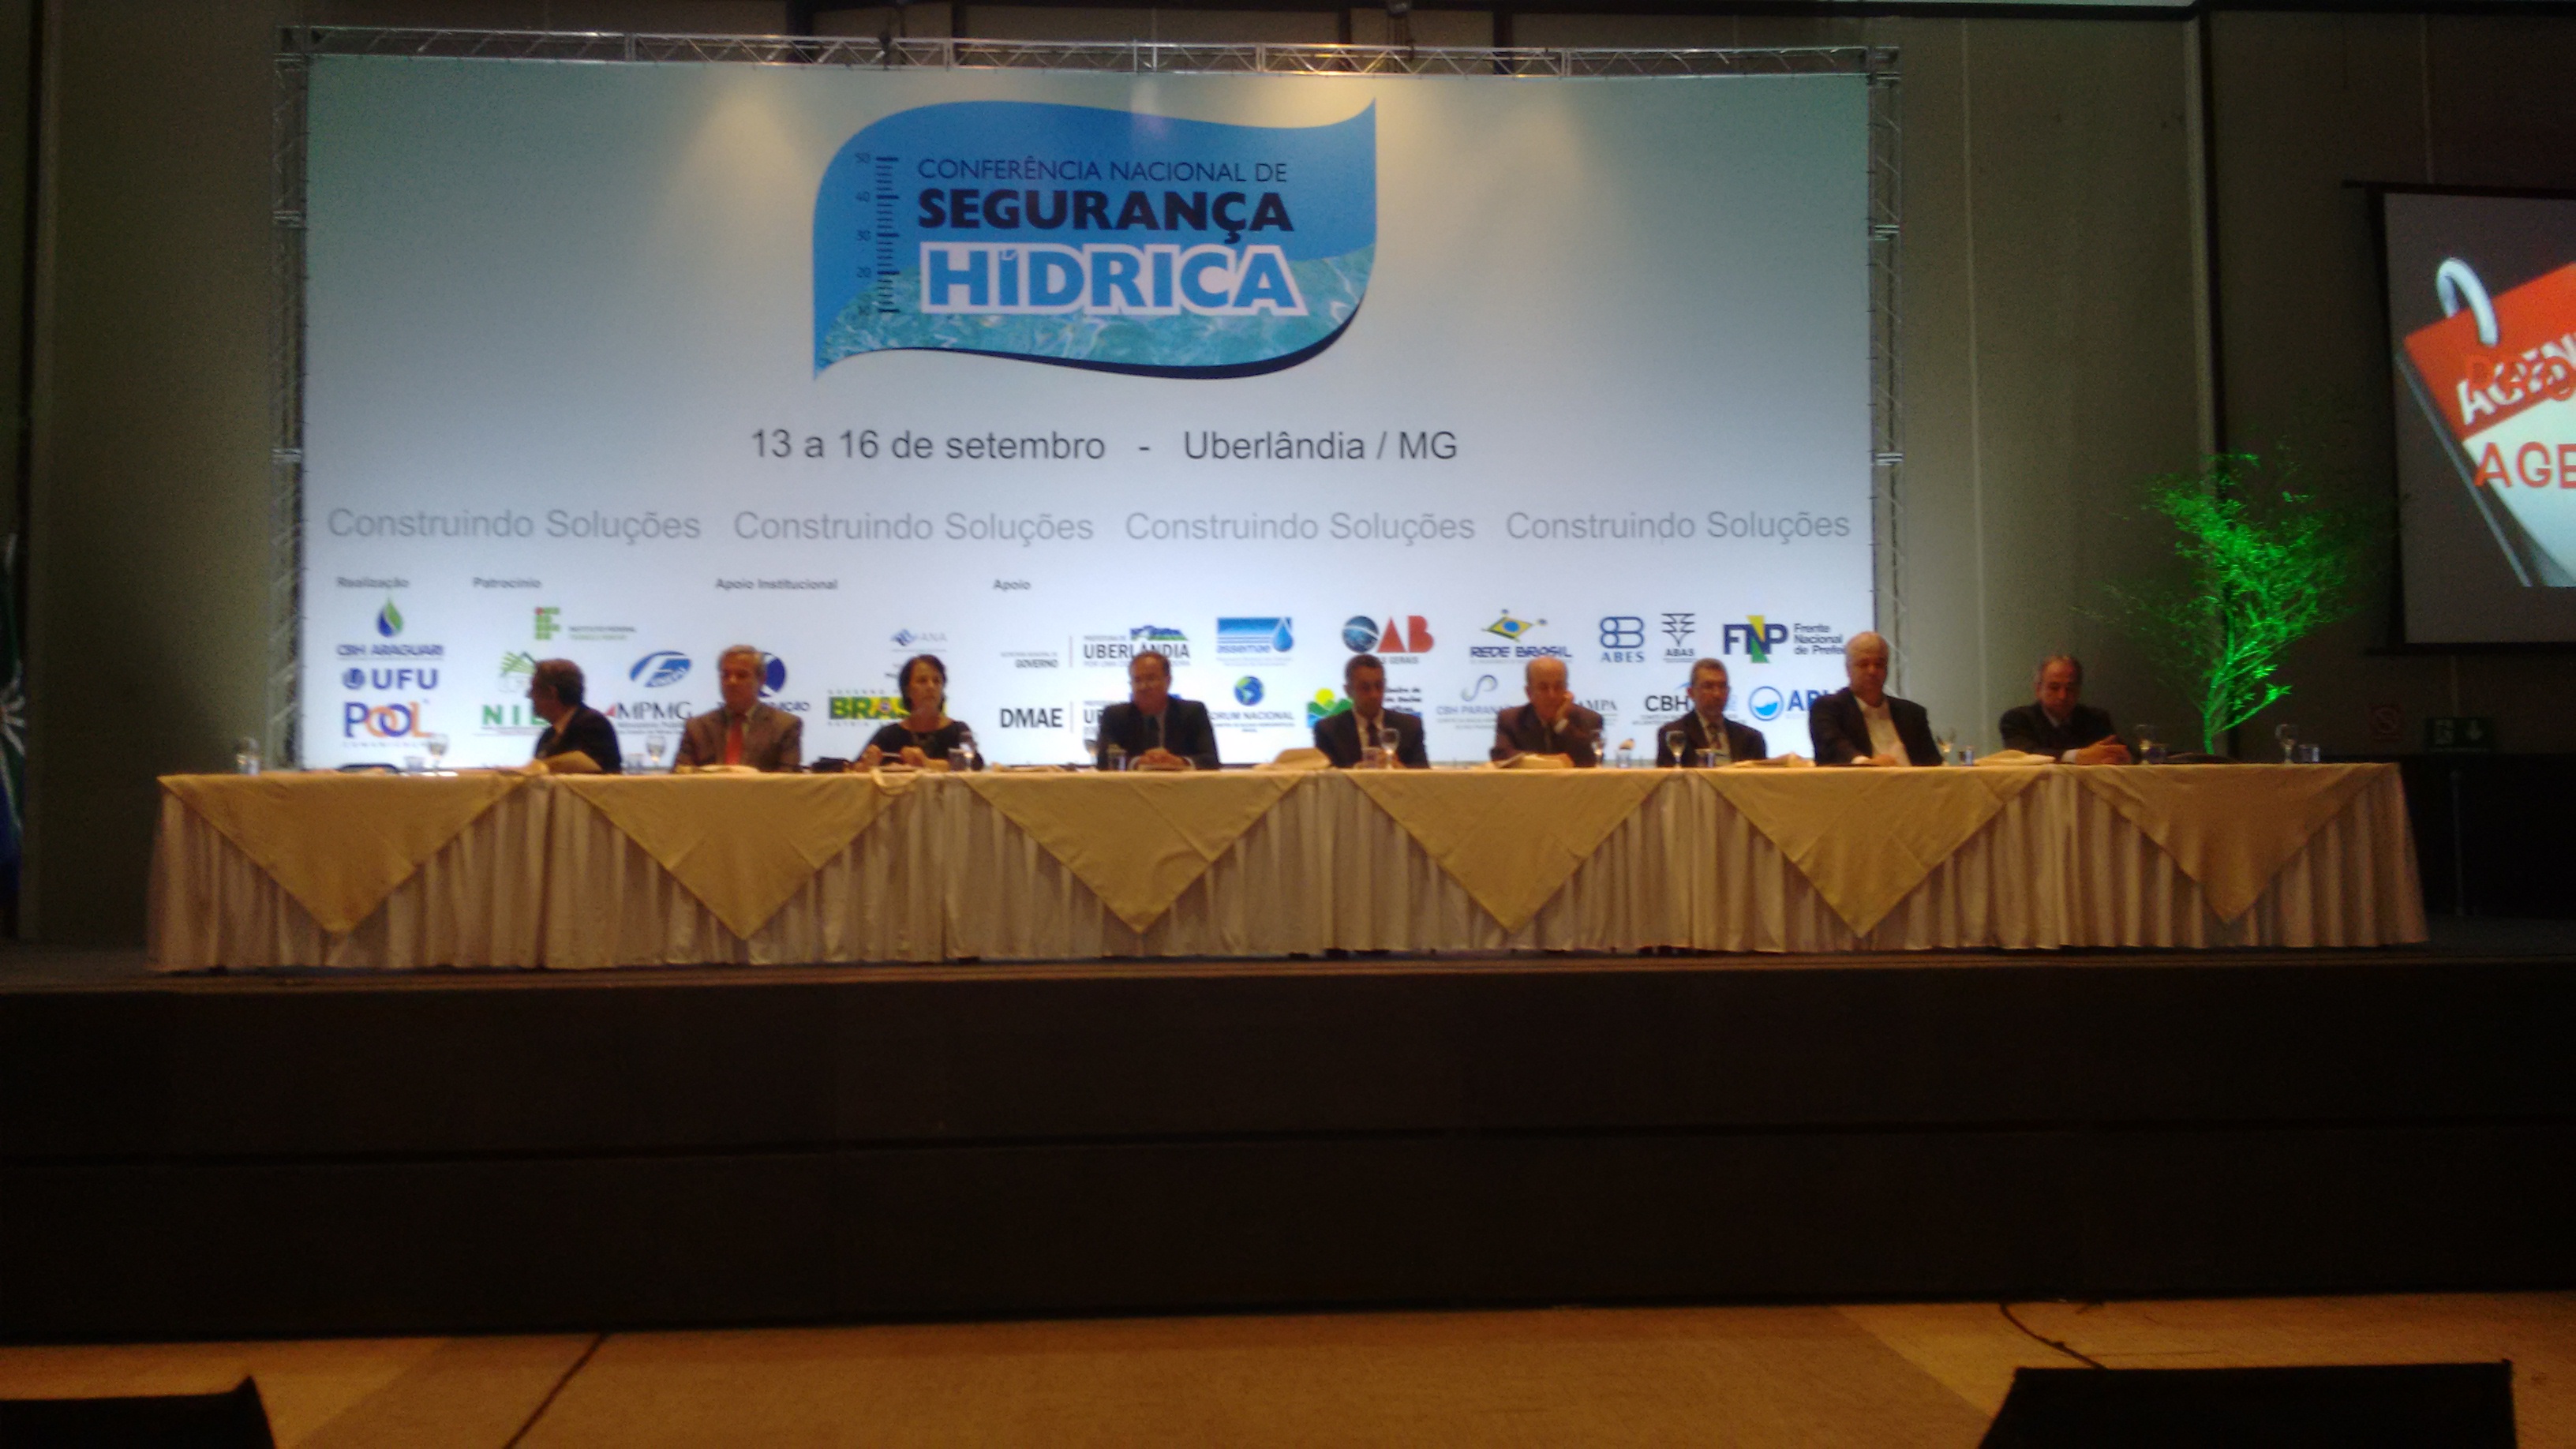 Conferência Nacional de Segurança Hídrica promove importante debate sobre gestão